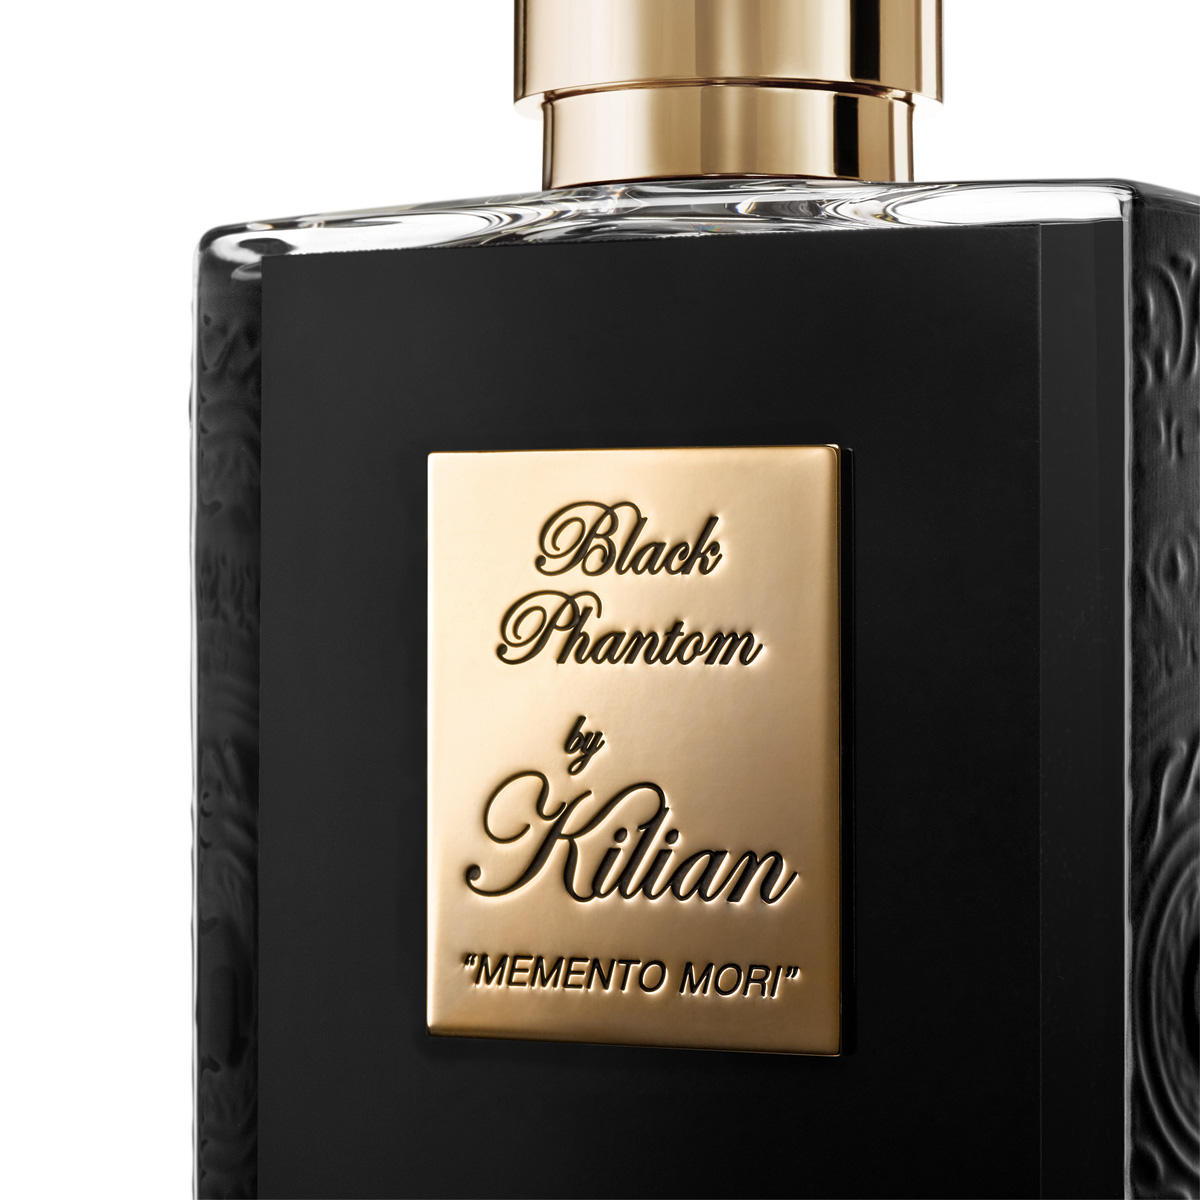 Kilian Paris Fragrance Black Phantom "Memento Mori" Eau de Parfum rechargeable 50 ml - 2